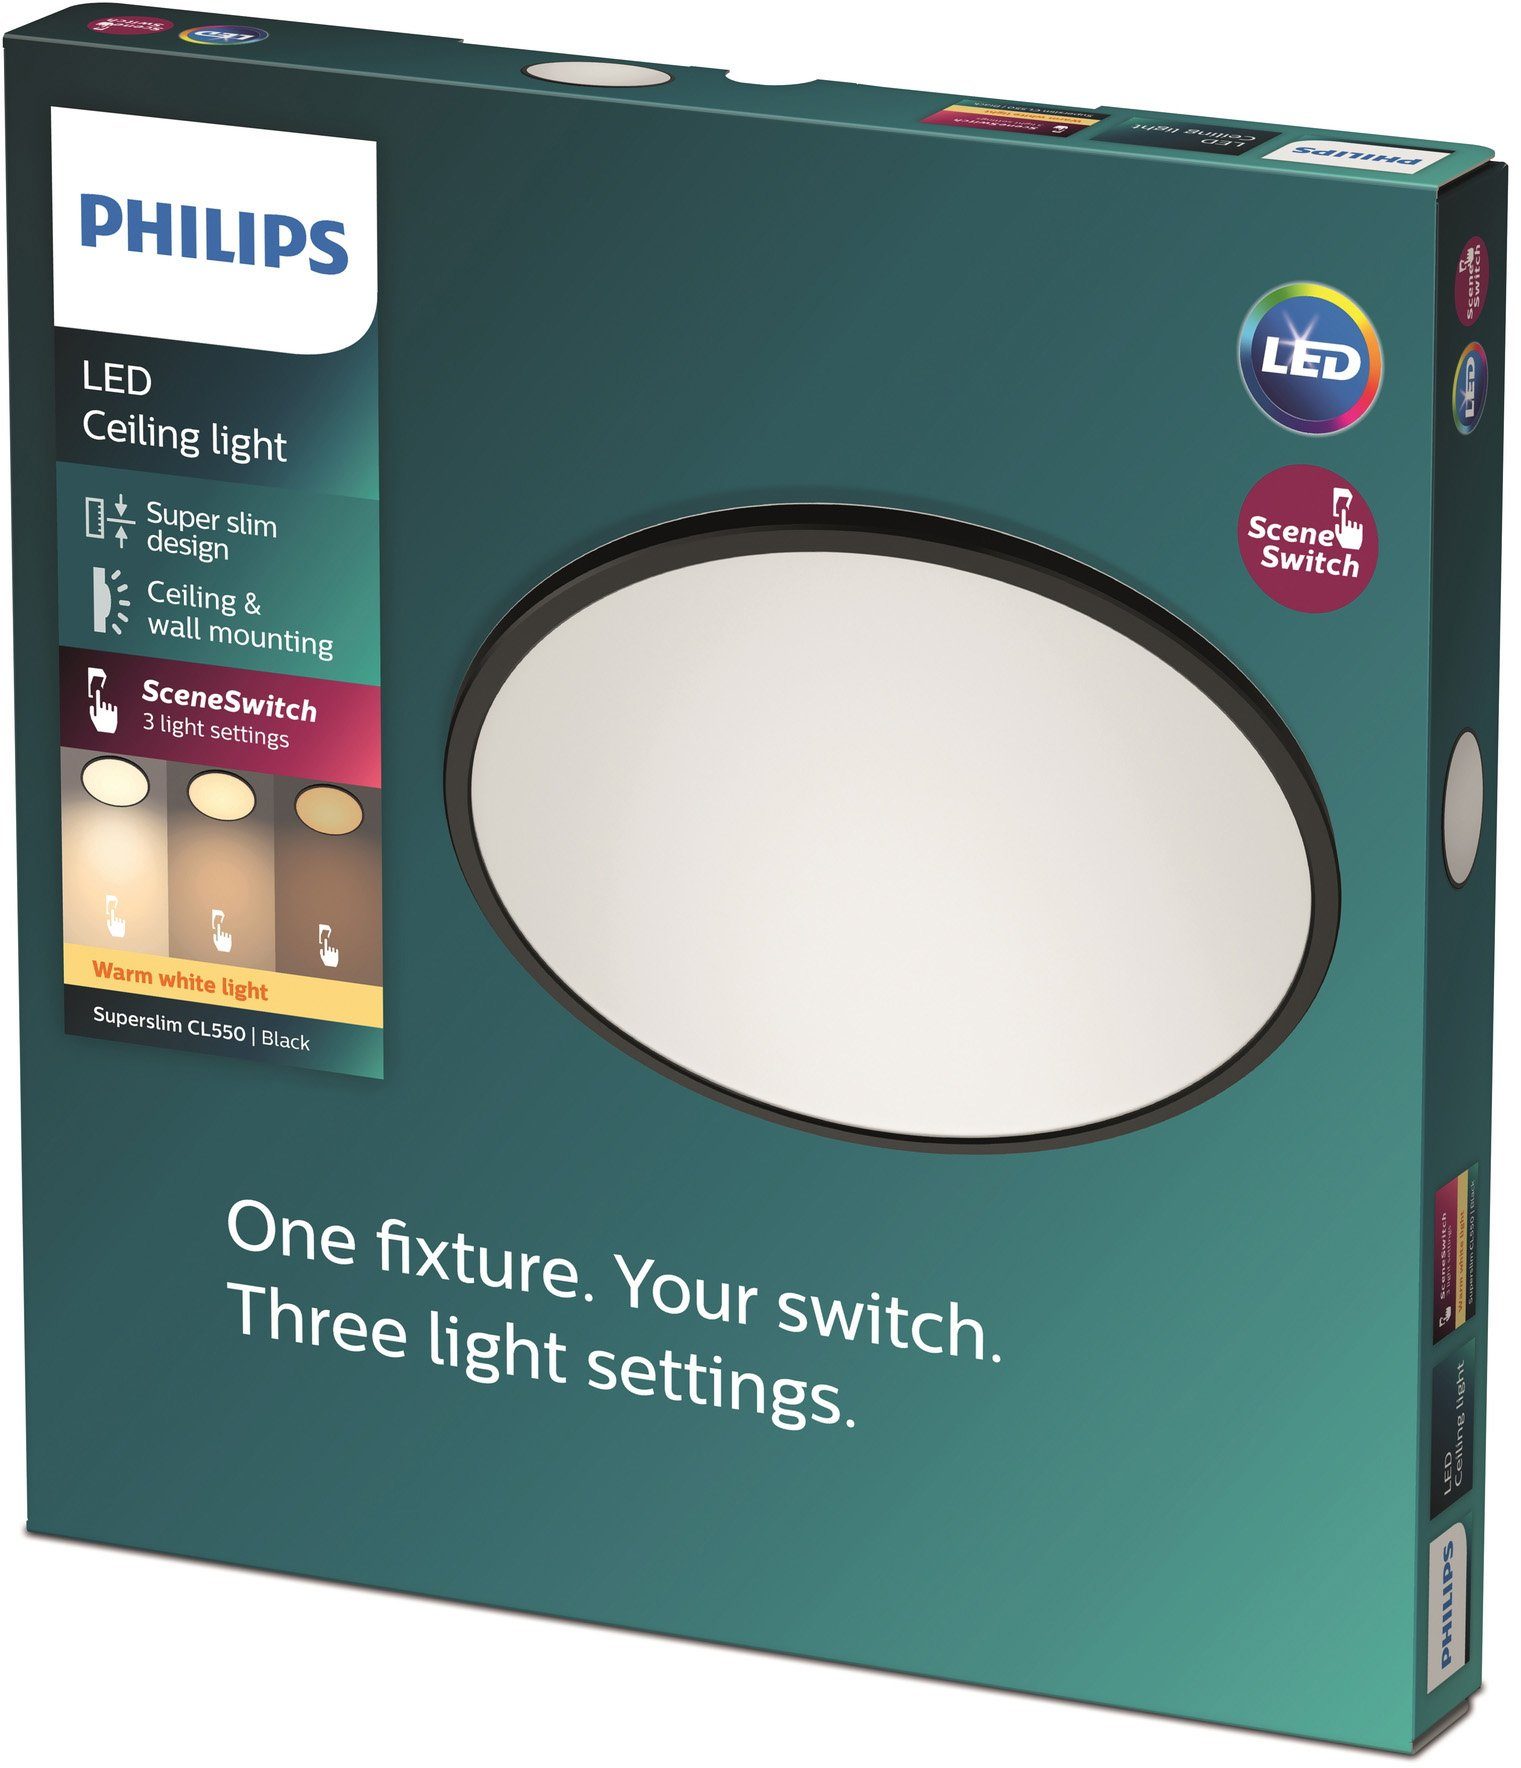 fest Leuchte 3in1 LED 1300lm Warmweiß, CL550 Philips o Deckenleuchte LED Dimmen schw DS SceneSwitch, integriert,